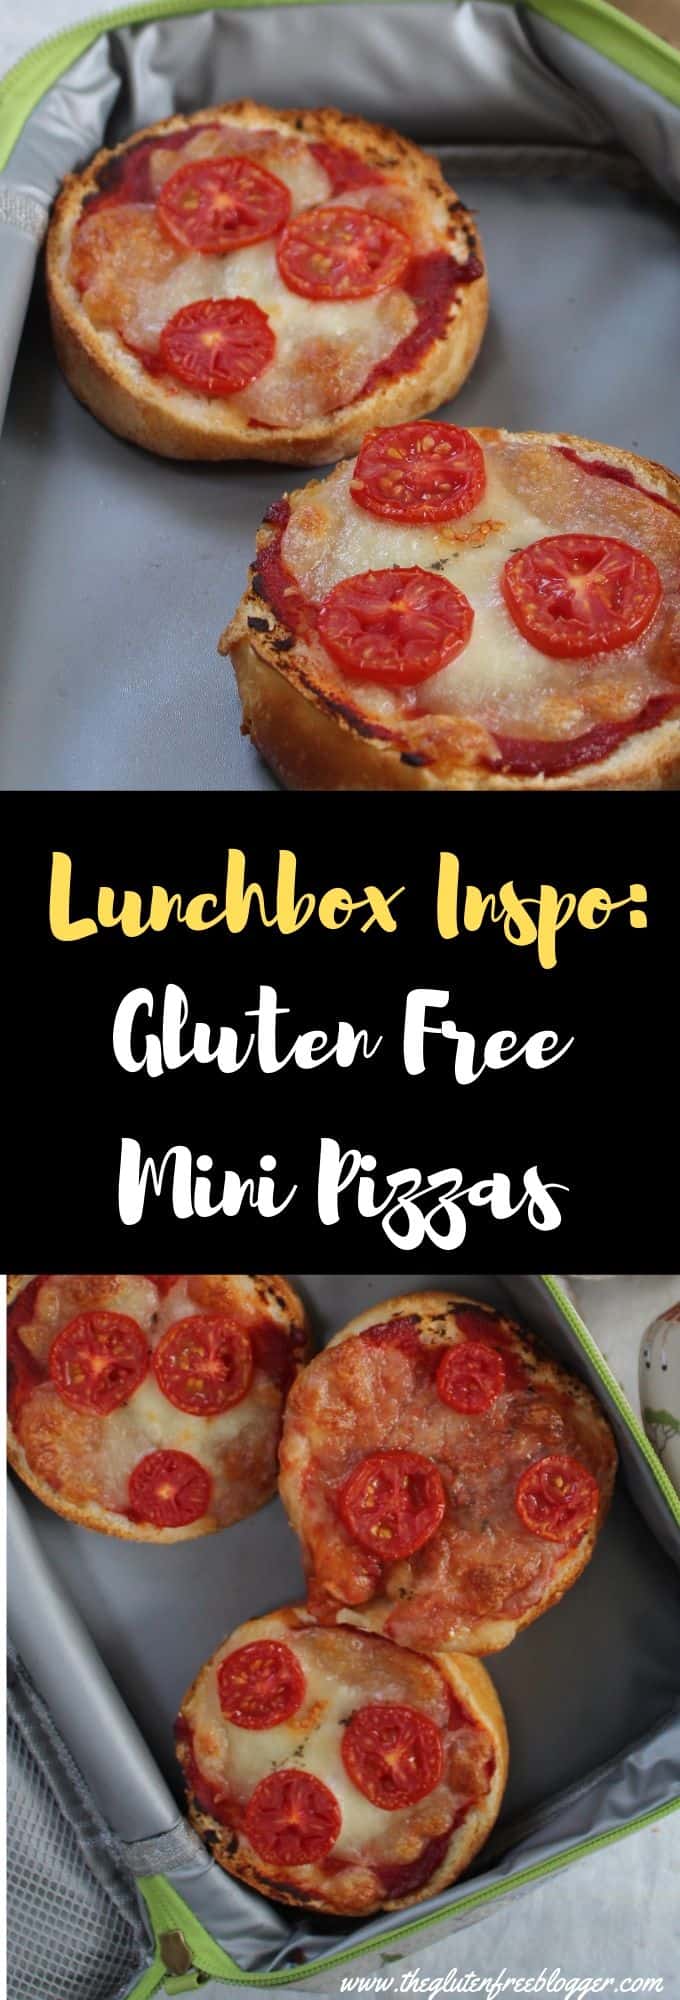 gluten free lunchbox ideas - gluten free children, coeliac children, lunch ideas for kids mini pizzas